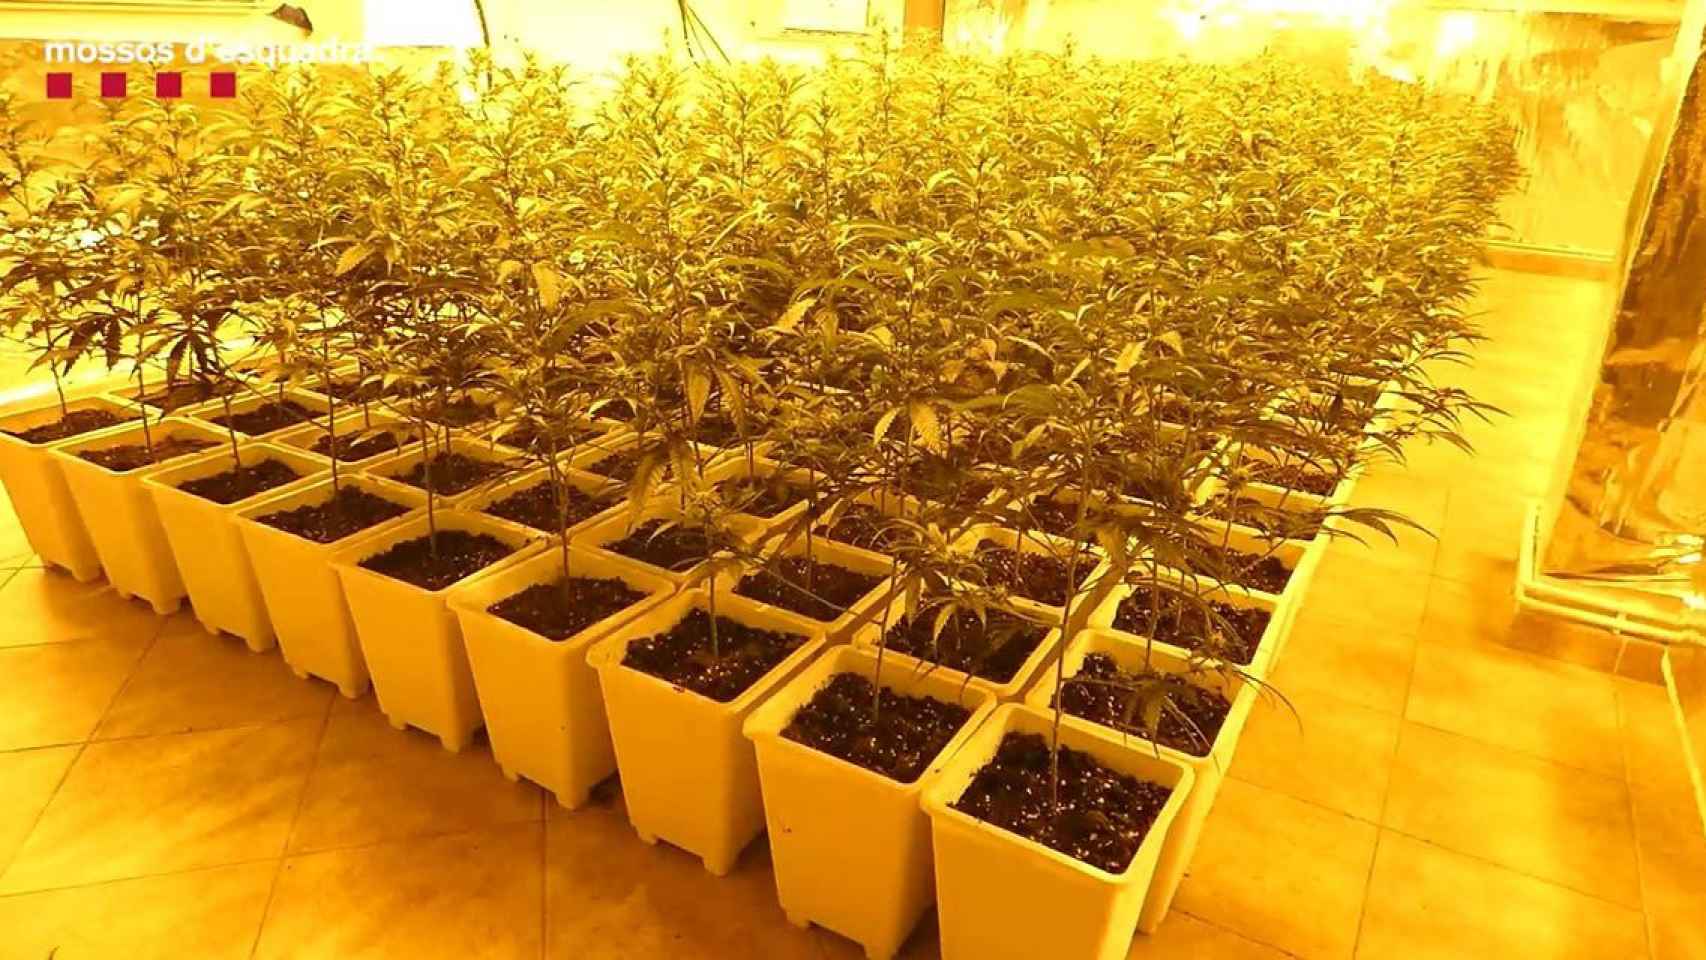 Las plantas de marihuana halladas en una vivienda de Llagostera (Girona) / MOSSOS D'ESQUADRA